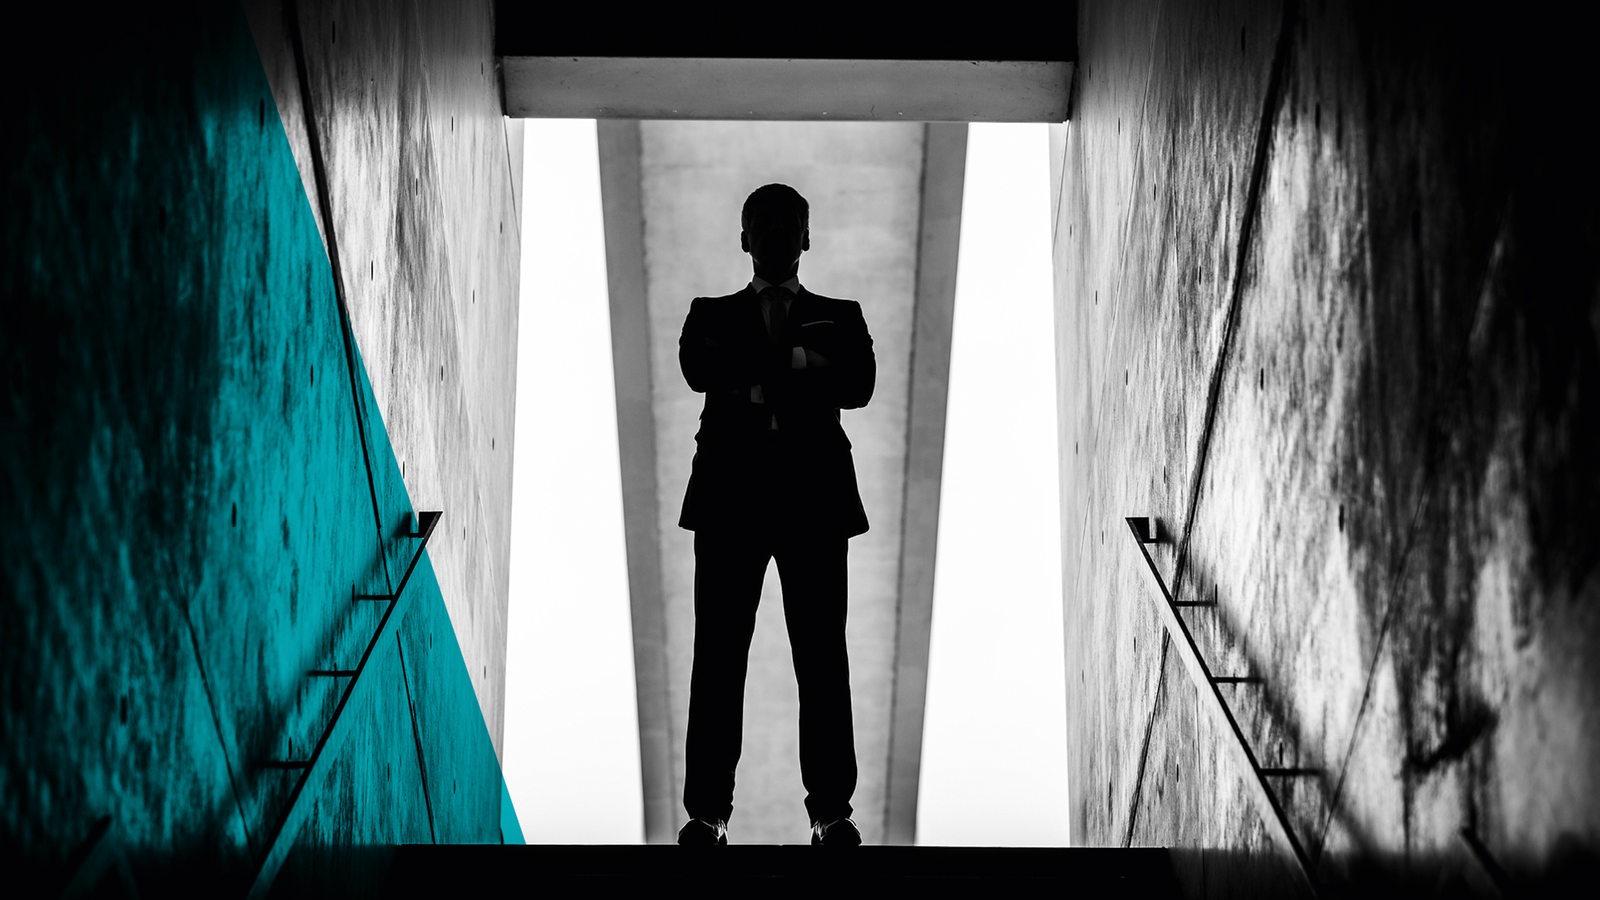 Keyvisual des ARD Radiofeatures "Frauenhass", die schwarze Silhouette eines Mannes oberhalb einer Treppe.